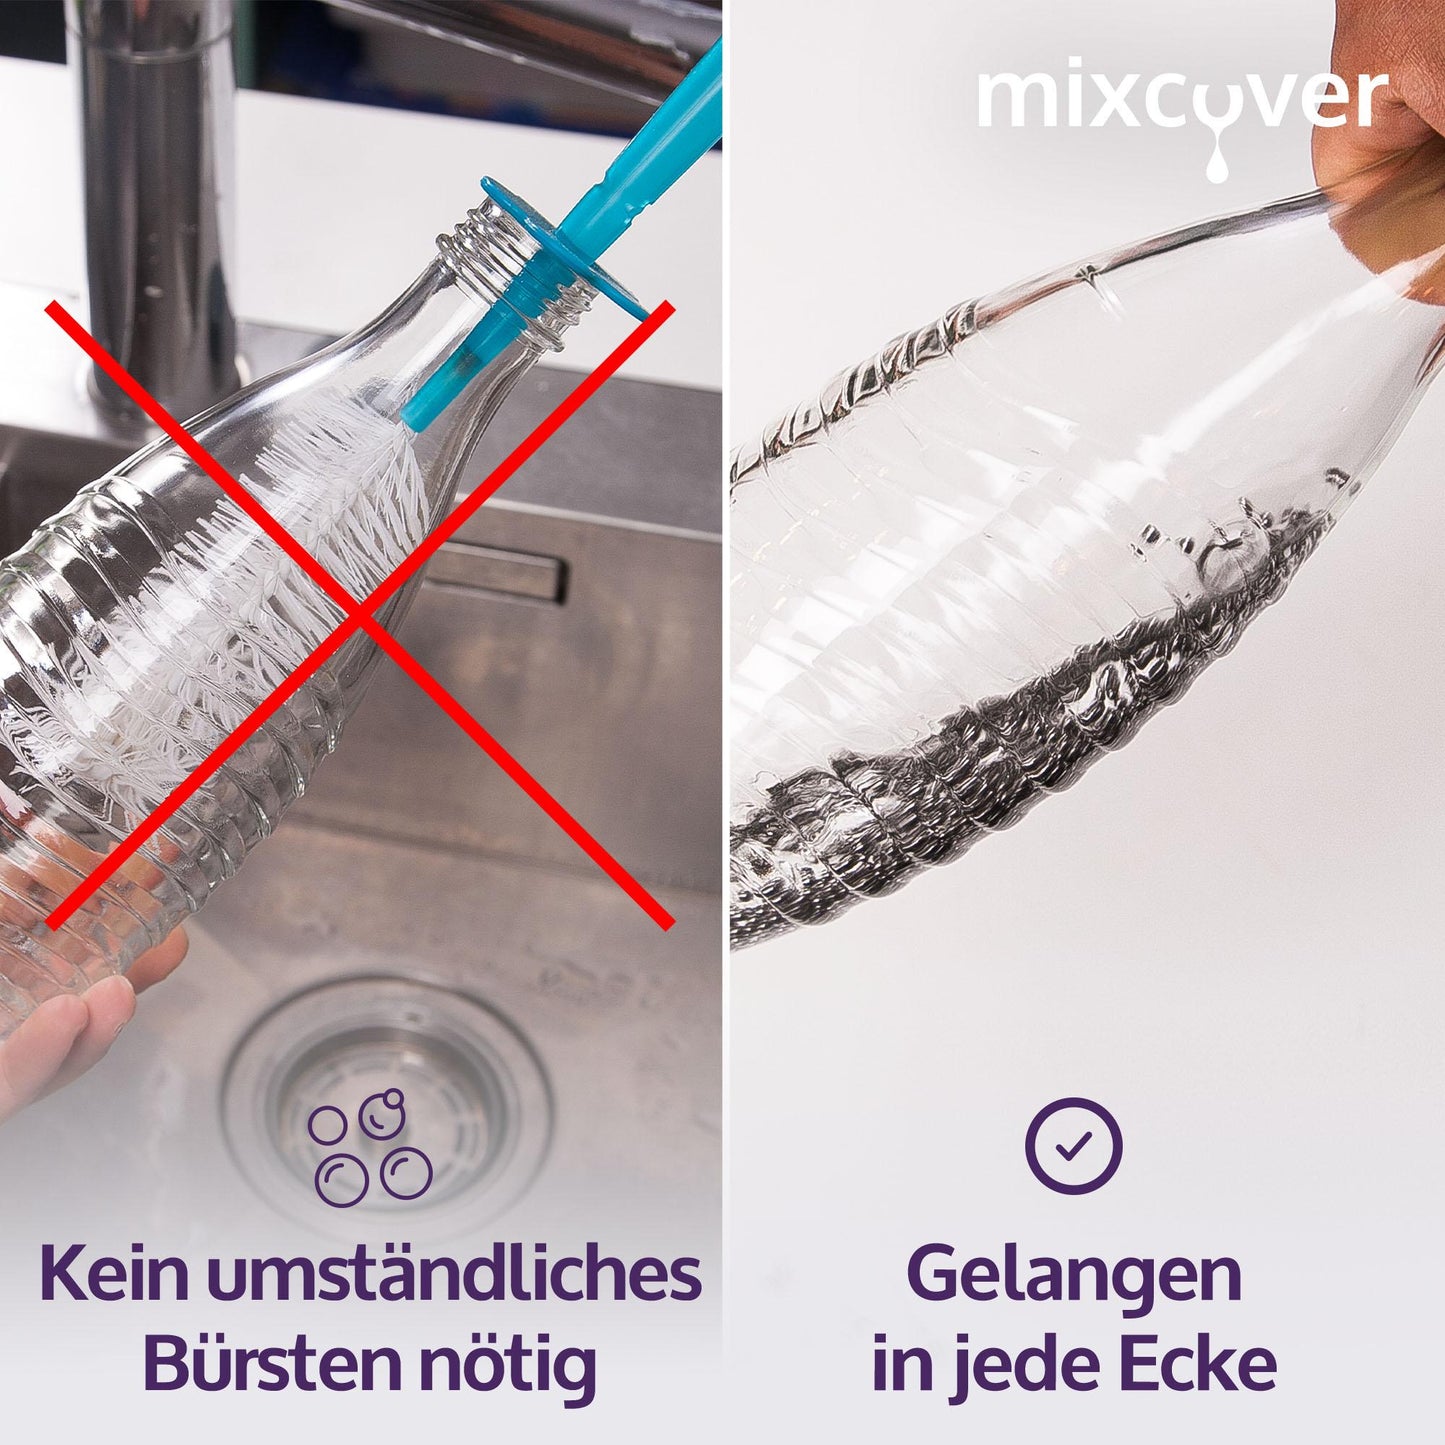 mixcover Reinigungskugeln kompatibel mit SodaStream und alle Anderen Flaschen - Mixcover - Mixcover